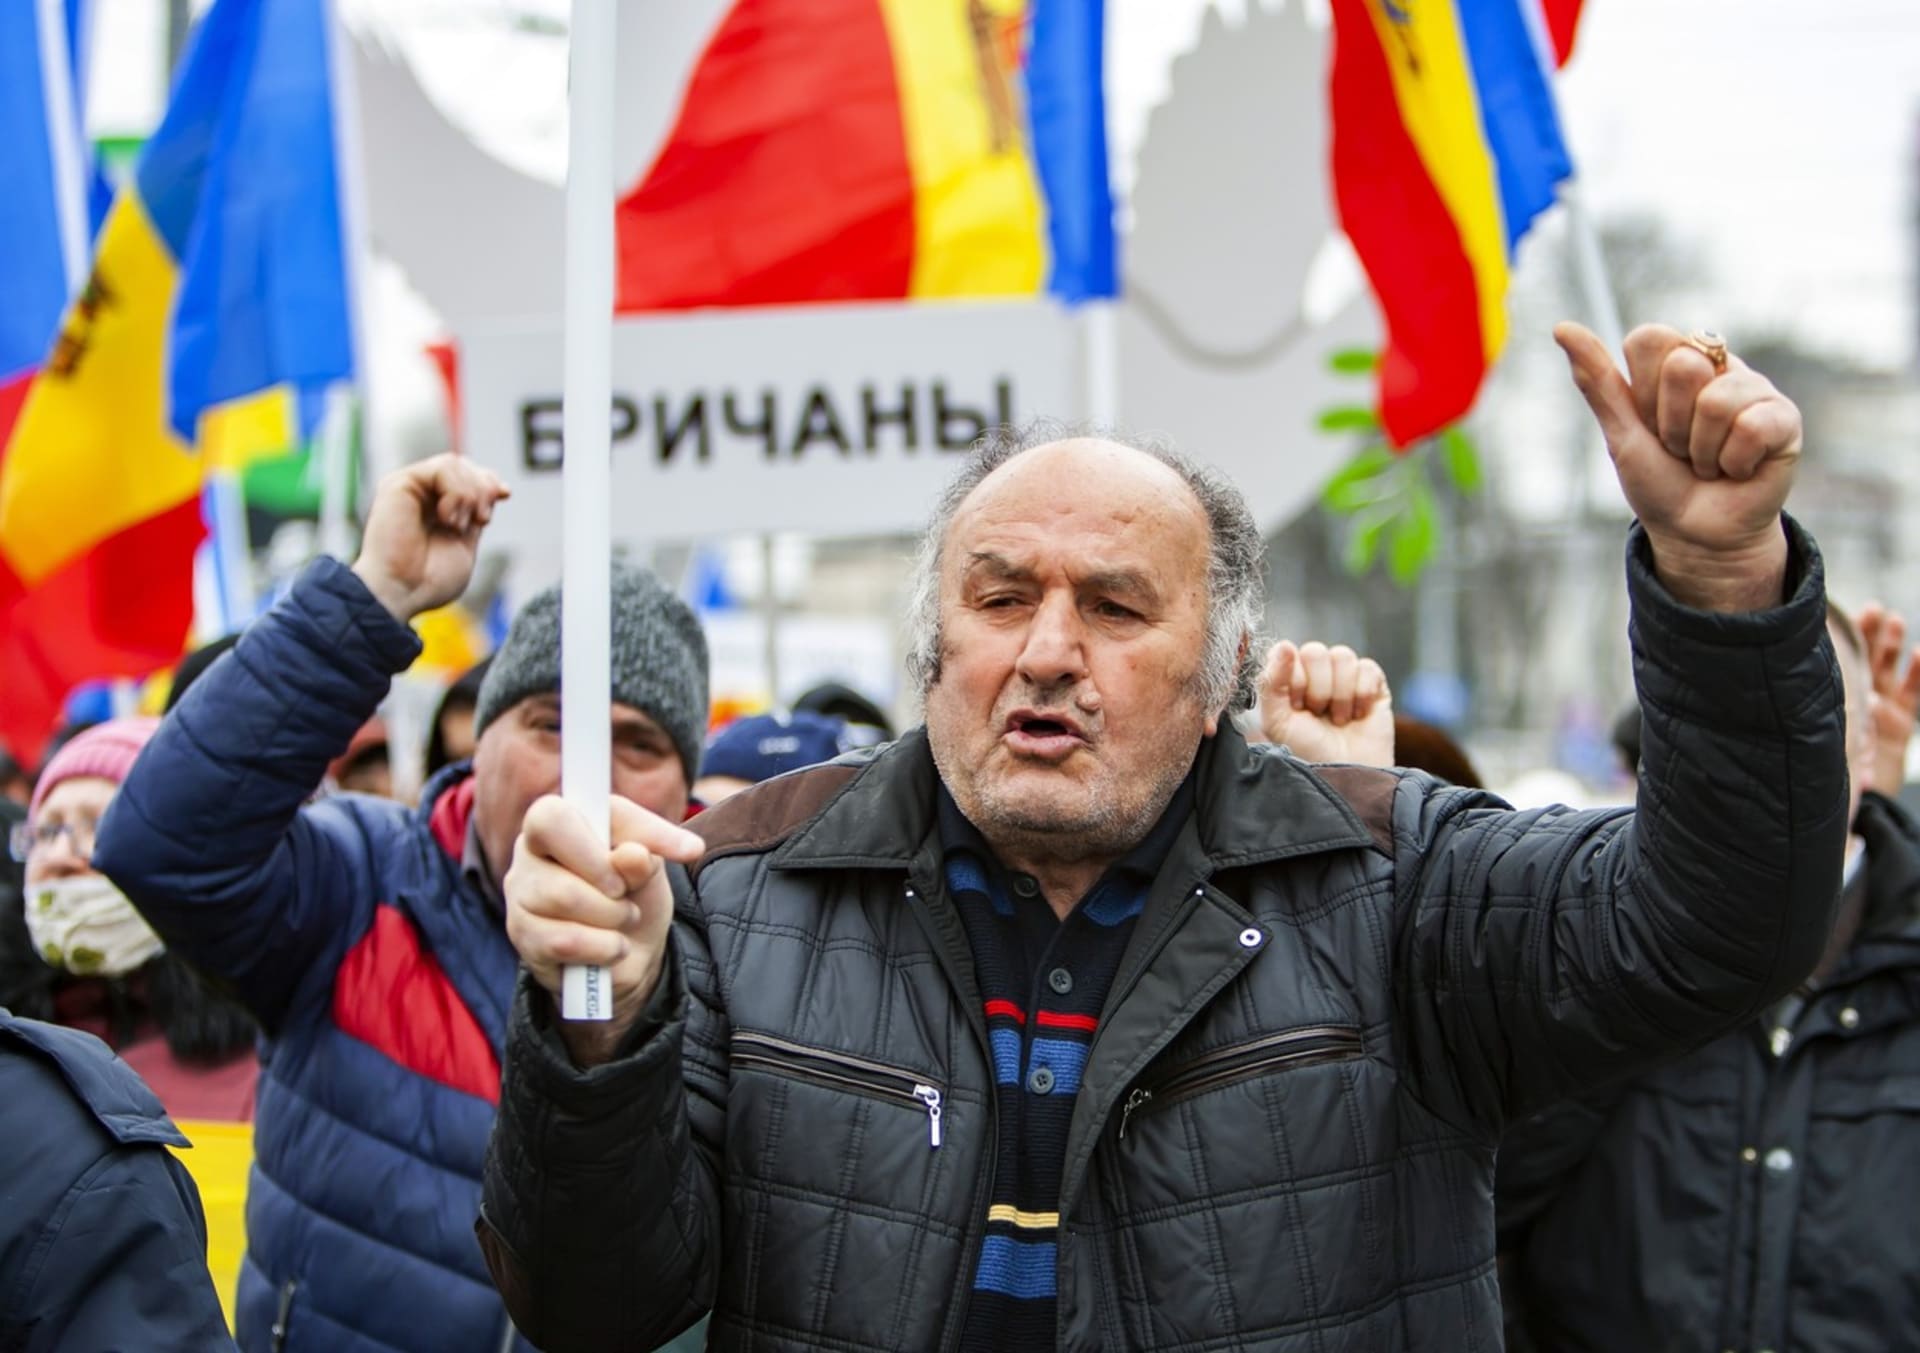 Část Moldavanů protestuje proti prozápadní vládě. Chtějí konec prezidentky, vlády a volají po neutralitě v konfliktu na Ukrajině.